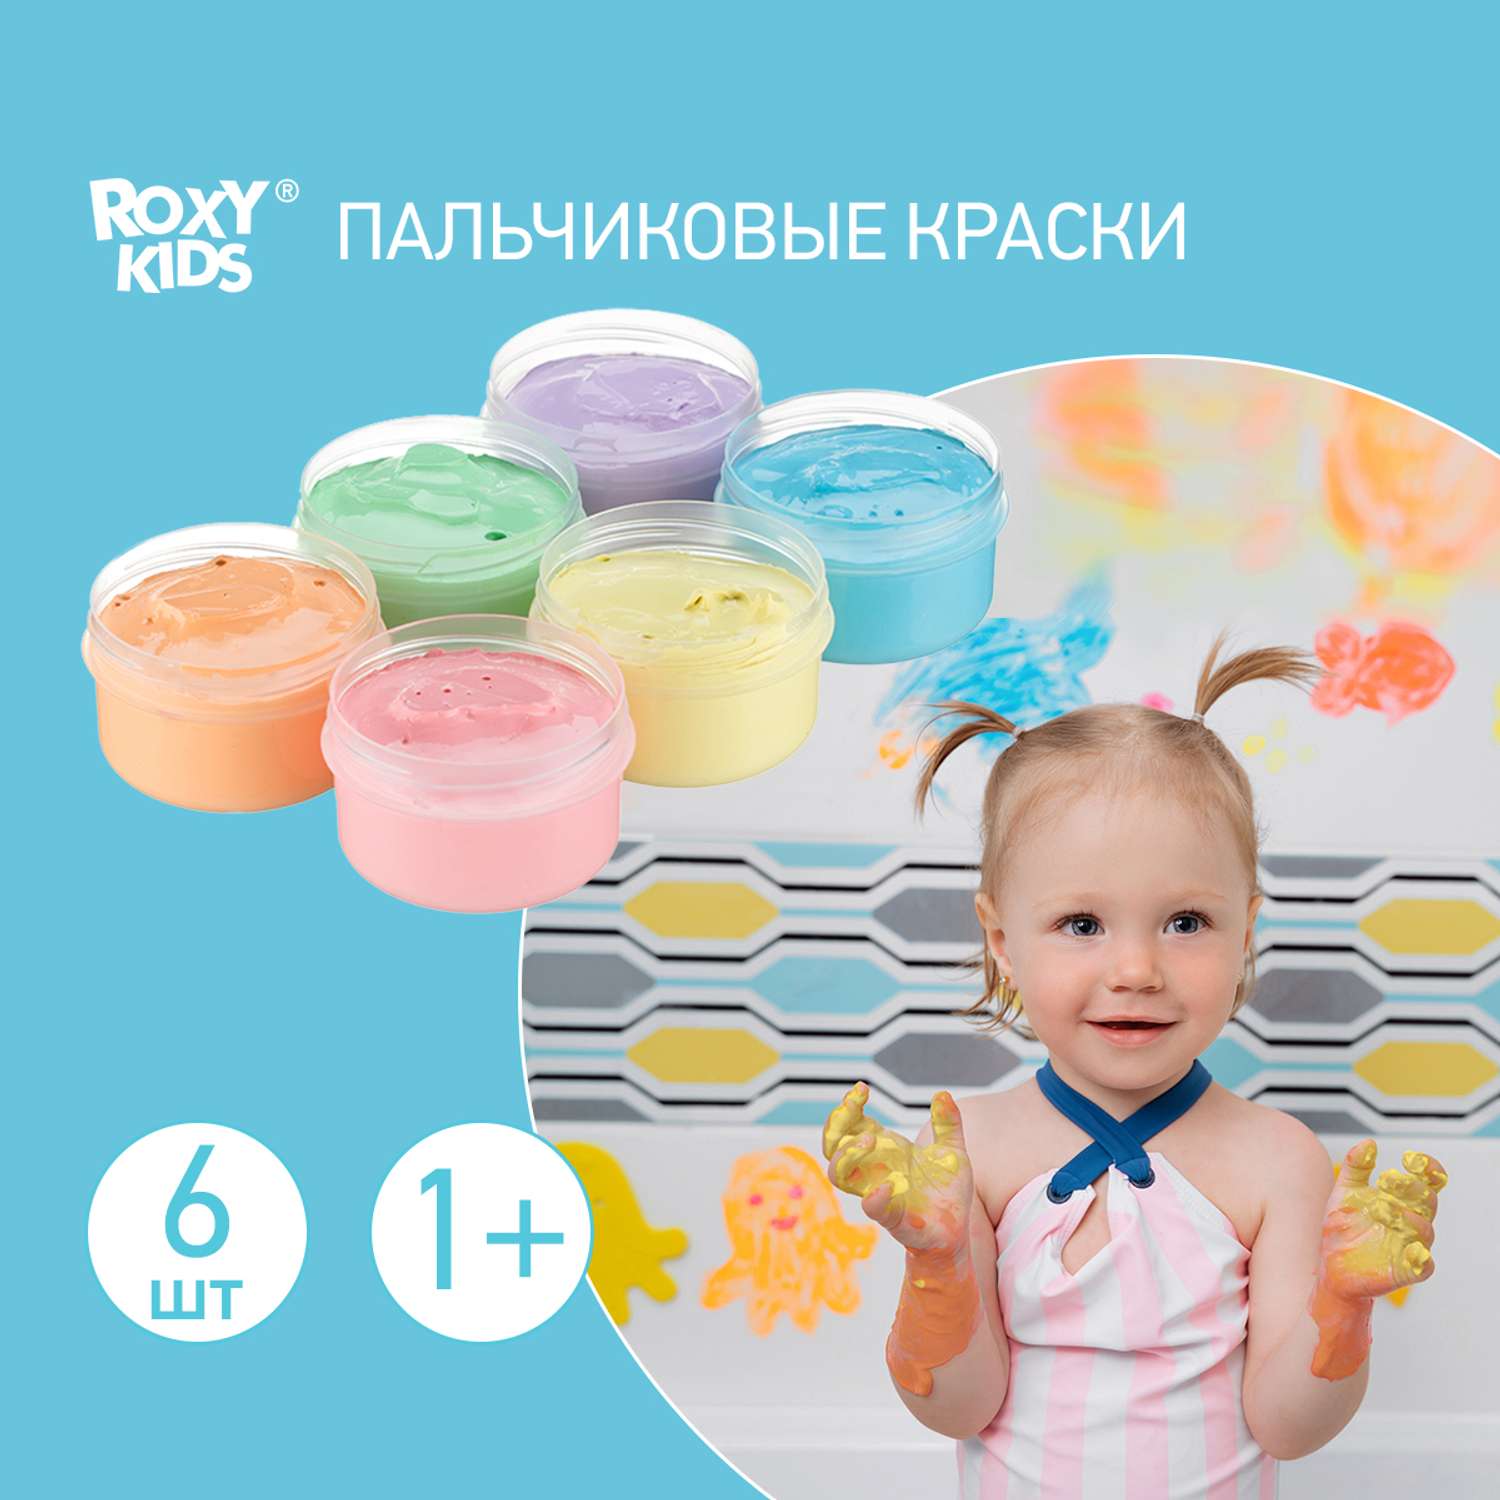 Пальчиковые краски ROXY-KIDS для малышей 6 цветов по 60 мл + обучающая брошюра - фото 1